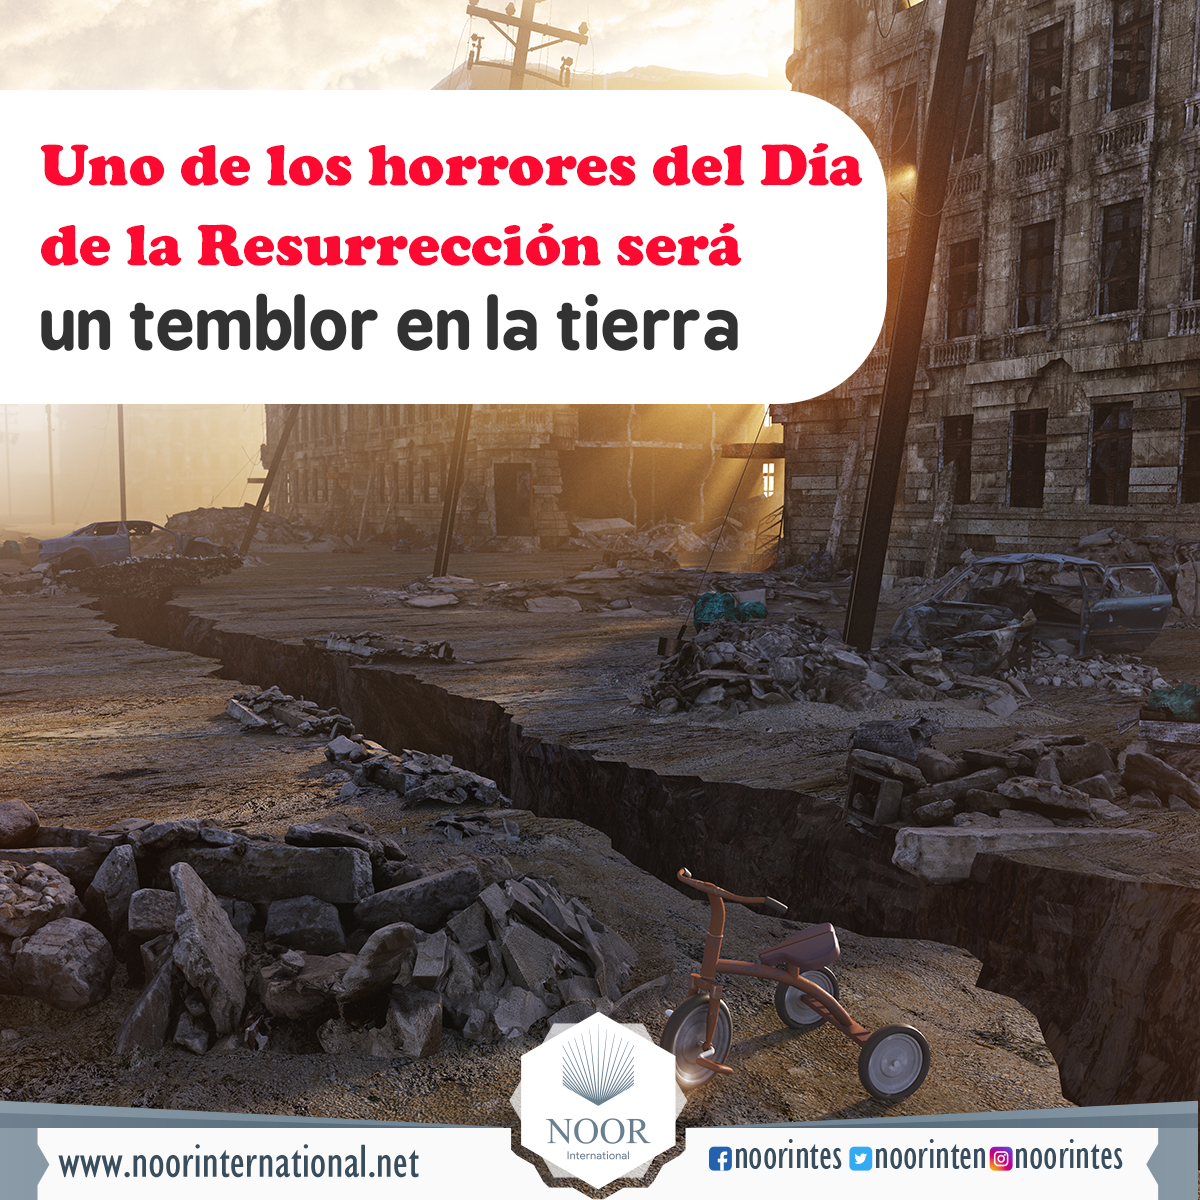 Uno de los horrores del Día de la Resurrección será un temblor en la tierra